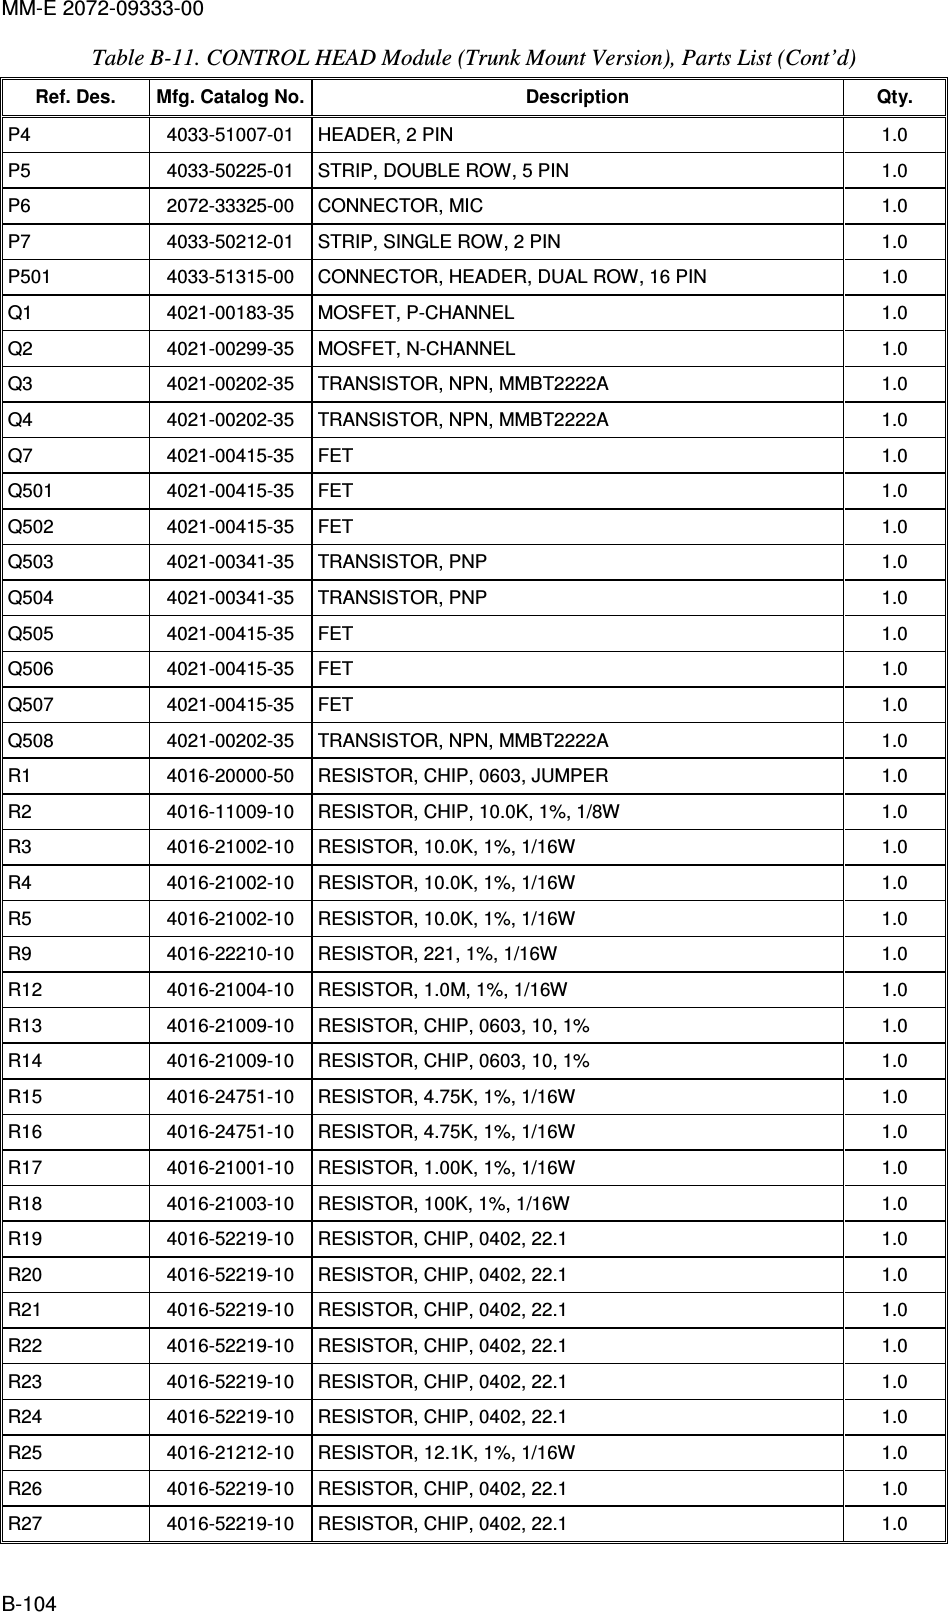 MM-E 2072-09333-00 B-104 Table  B-11. CONTROL HEAD Module (Trunk Mount Version), Parts List (Cont’d)  Ref. Des.  Mfg. Catalog No. Description  Qty. P4   4033-51007-01   HEADER, 2 PIN   1.0  P5   4033-50225-01   STRIP, DOUBLE ROW, 5 PIN   1.0  P6   2072-33325-00   CONNECTOR, MIC   1.0  P7   4033-50212-01   STRIP, SINGLE ROW, 2 PIN   1.0  P501   4033-51315-00   CONNECTOR, HEADER, DUAL ROW, 16 PIN  1.0  Q1   4021-00183-35   MOSFET, P-CHANNEL  1.0  Q2   4021-00299-35   MOSFET, N-CHANNEL  1.0  Q3   4021-00202-35   TRANSISTOR, NPN, MMBT2222A   1.0  Q4   4021-00202-35   TRANSISTOR, NPN, MMBT2222A   1.0  Q7   4021-00415-35   FET  1.0  Q501   4021-00415-35   FET  1.0  Q502   4021-00415-35   FET  1.0  Q503   4021-00341-35   TRANSISTOR, PNP  1.0  Q504   4021-00341-35   TRANSISTOR, PNP  1.0  Q505   4021-00415-35   FET  1.0  Q506   4021-00415-35   FET  1.0  Q507   4021-00415-35   FET  1.0  Q508   4021-00202-35   TRANSISTOR, NPN, MMBT2222A  1.0  R1   4016-20000-50   RESISTOR, CHIP, 0603, JUMPER  1.0  R2   4016-11009-10   RESISTOR, CHIP, 10.0K, 1%, 1/8W  1.0  R3   4016-21002-10   RESISTOR, 10.0K, 1%, 1/16W  1.0  R4   4016-21002-10   RESISTOR, 10.0K, 1%, 1/16W  1.0  R5   4016-21002-10   RESISTOR, 10.0K, 1%, 1/16W  1.0  R9   4016-22210-10   RESISTOR, 221, 1%, 1/16W  1.0  R12   4016-21004-10   RESISTOR, 1.0M, 1%, 1/16W  1.0  R13   4016-21009-10   RESISTOR, CHIP, 0603, 10, 1%  1.0  R14   4016-21009-10   RESISTOR, CHIP, 0603, 10, 1%  1.0  R15   4016-24751-10   RESISTOR, 4.75K, 1%, 1/16W  1.0  R16   4016-24751-10   RESISTOR, 4.75K, 1%, 1/16W  1.0  R17   4016-21001-10   RESISTOR, 1.00K, 1%, 1/16W  1.0  R18   4016-21003-10   RESISTOR, 100K, 1%, 1/16W  1.0  R19   4016-52219-10   RESISTOR, CHIP, 0402, 22.1  1.0  R20   4016-52219-10   RESISTOR, CHIP, 0402, 22.1  1.0  R21   4016-52219-10   RESISTOR, CHIP, 0402, 22.1  1.0  R22   4016-52219-10   RESISTOR, CHIP, 0402, 22.1  1.0  R23   4016-52219-10   RESISTOR, CHIP, 0402, 22.1  1.0  R24   4016-52219-10   RESISTOR, CHIP, 0402, 22.1  1.0  R25   4016-21212-10   RESISTOR, 12.1K, 1%, 1/16W  1.0  R26   4016-52219-10   RESISTOR, CHIP, 0402, 22.1  1.0  R27   4016-52219-10   RESISTOR, CHIP, 0402, 22.1  1.0  